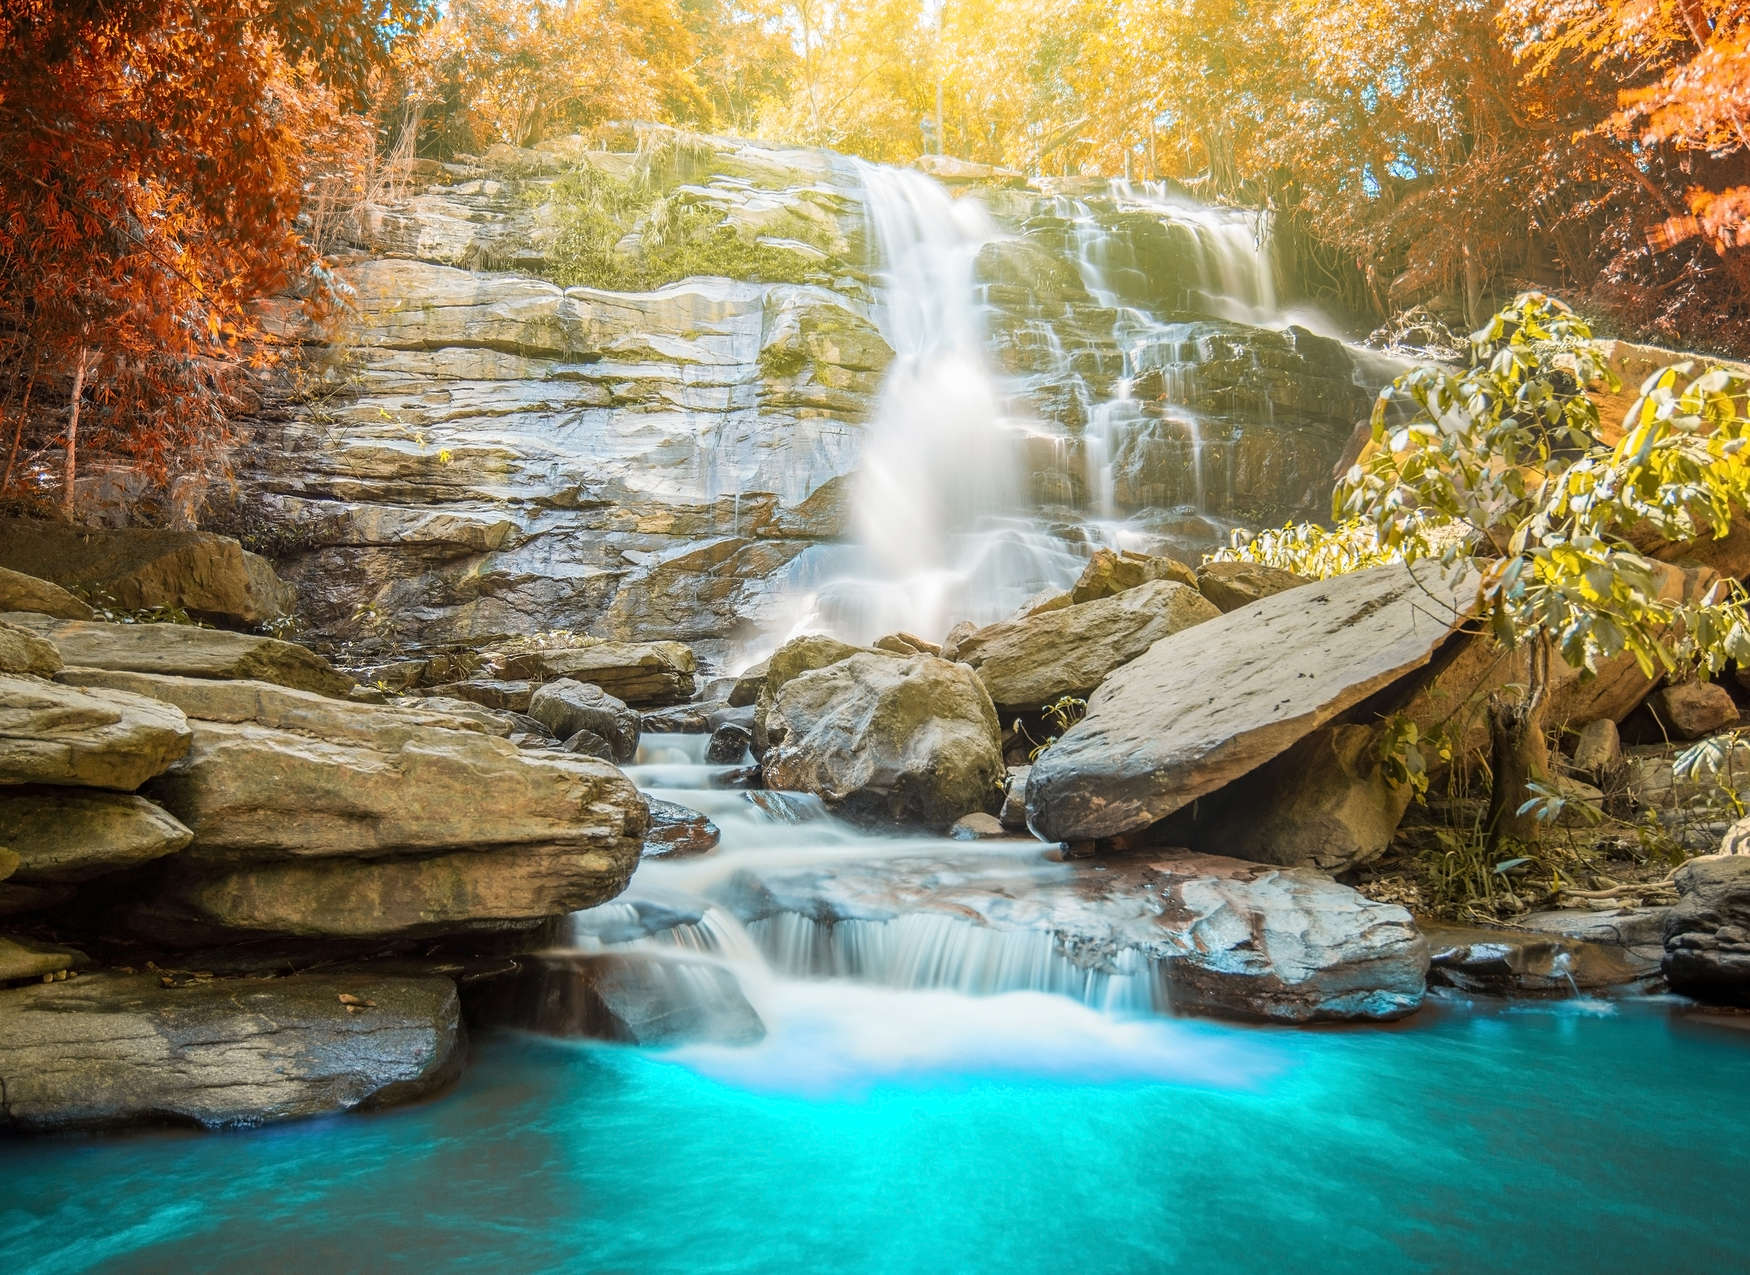             Idyllischer Wald mit Wasserfall – Blau, Grau, Orange
        